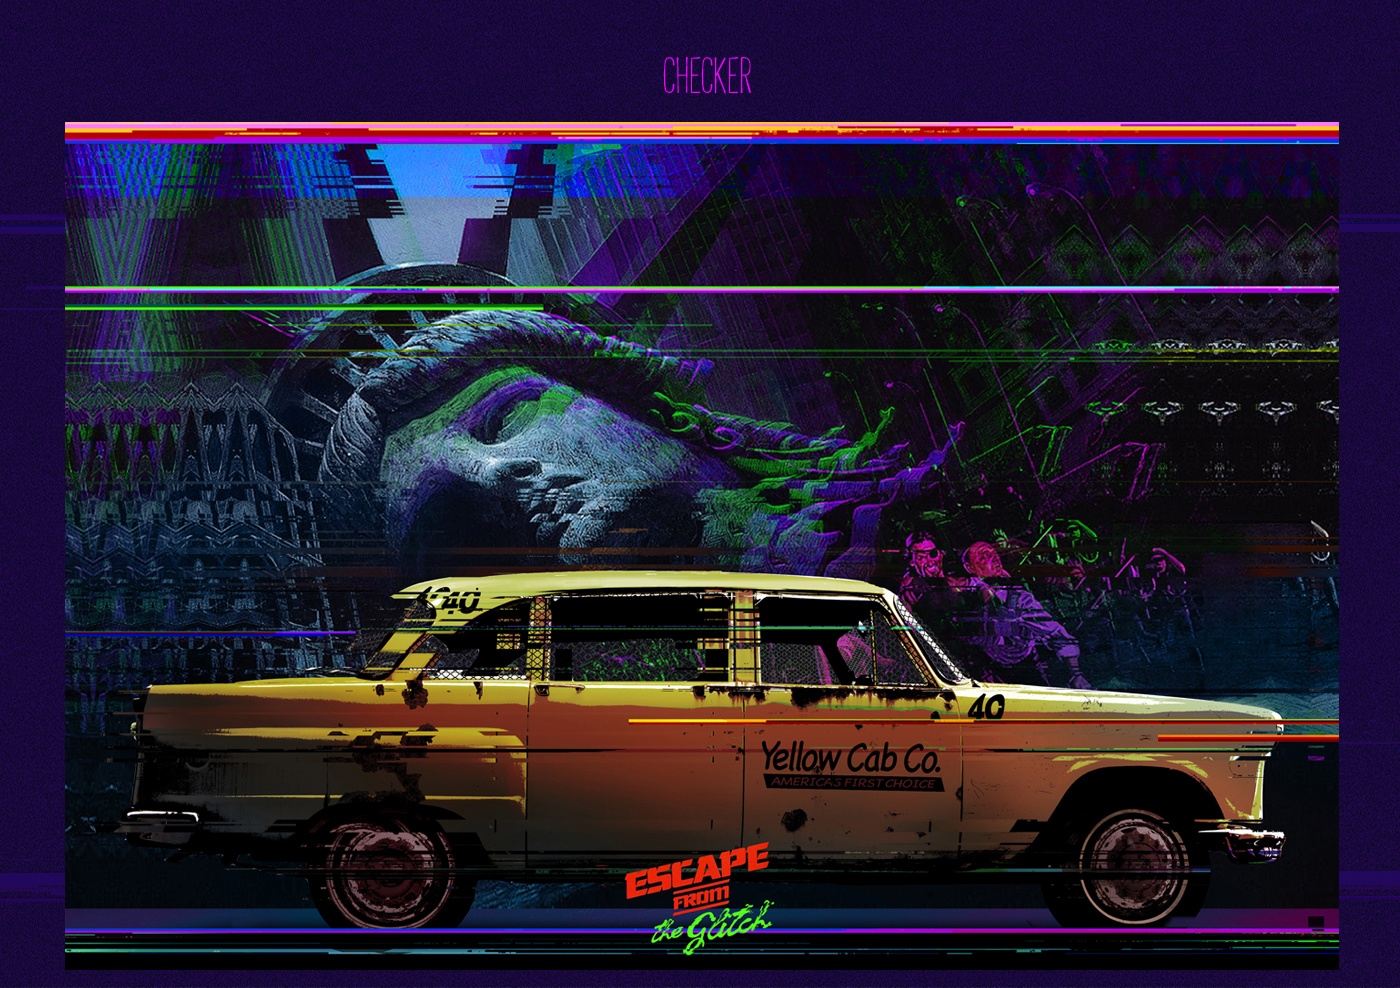 Glitch Ghostbusters madmax collage miami vice escape New York car Classic Retro 80s DeLorean interceptor back future